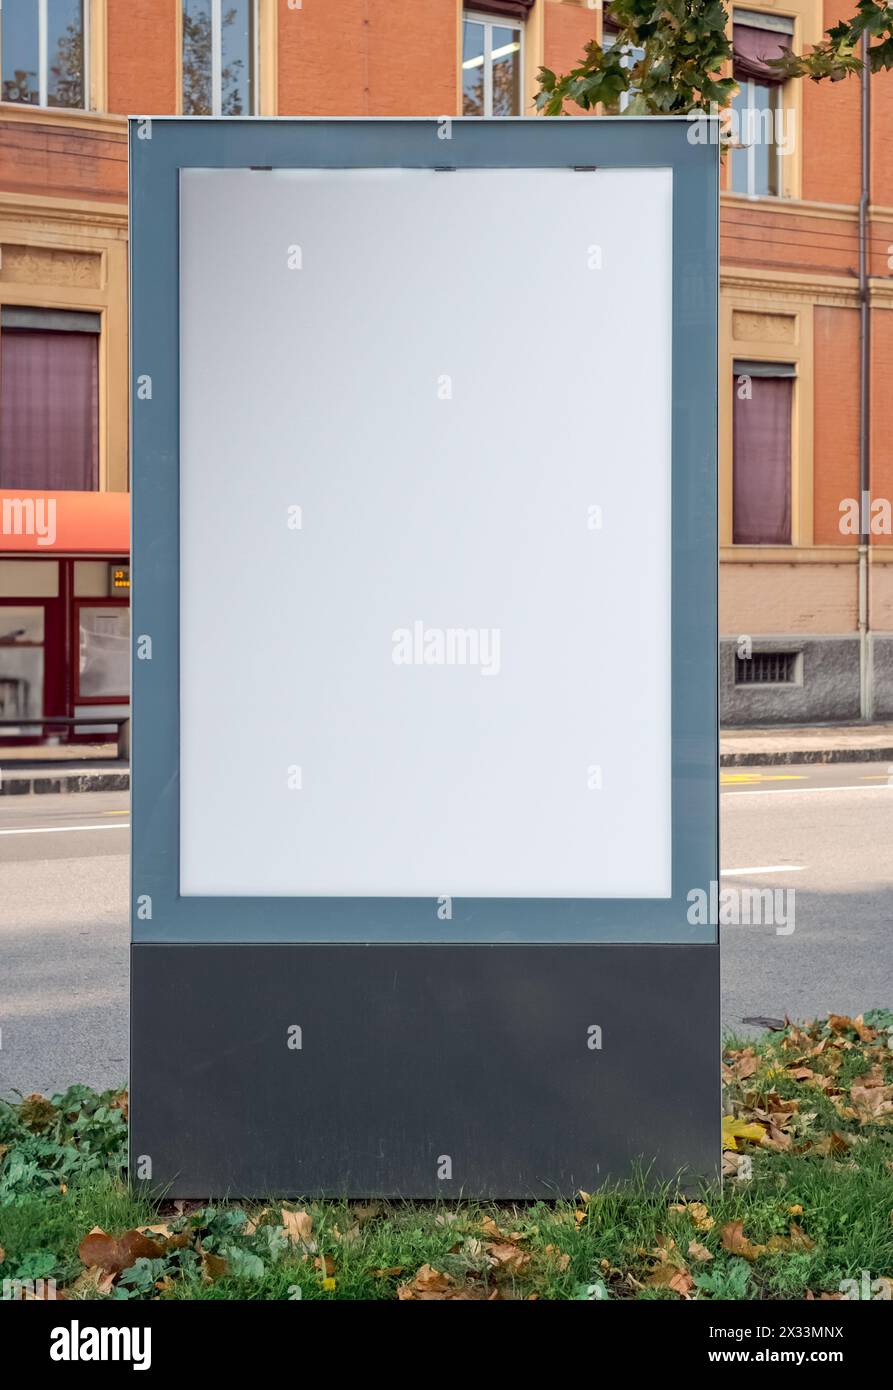 Panneau publicitaire vide pris dans une rue à Bologne, Italie. Modèle utile pour maquette Banque D'Images